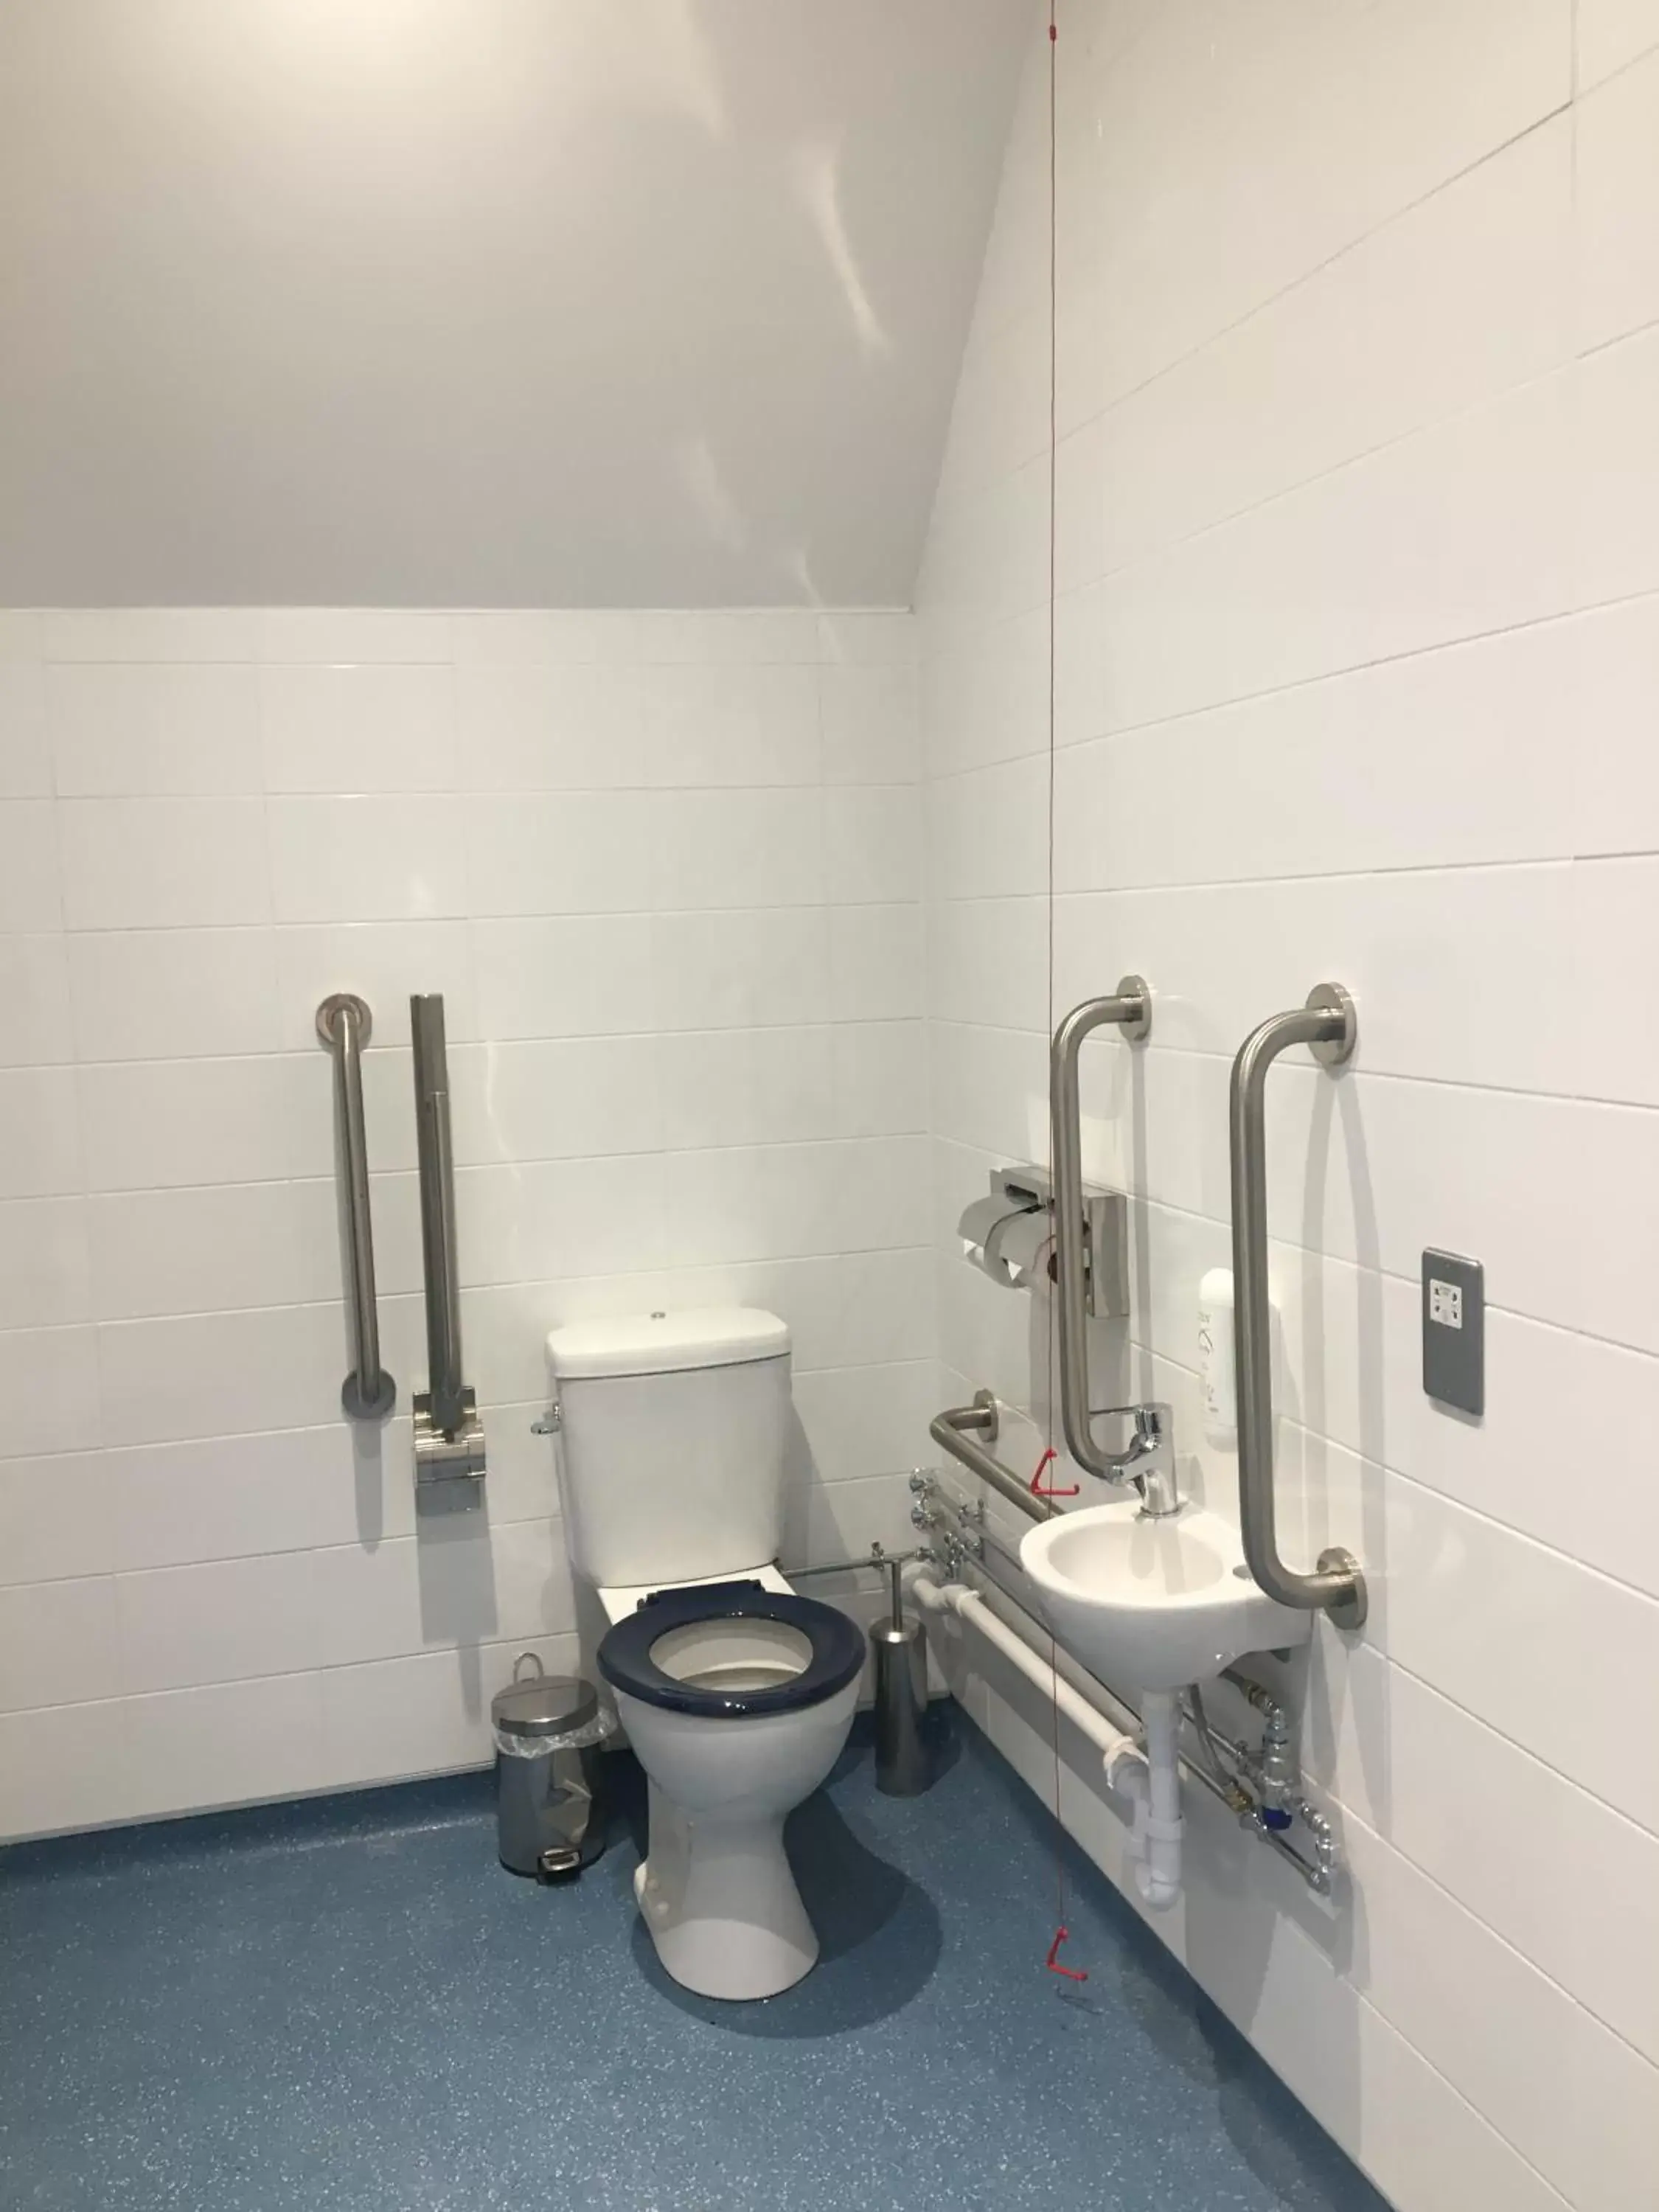 Toilet, Bathroom in The Catherine Wheel Wetherspoon Hotel